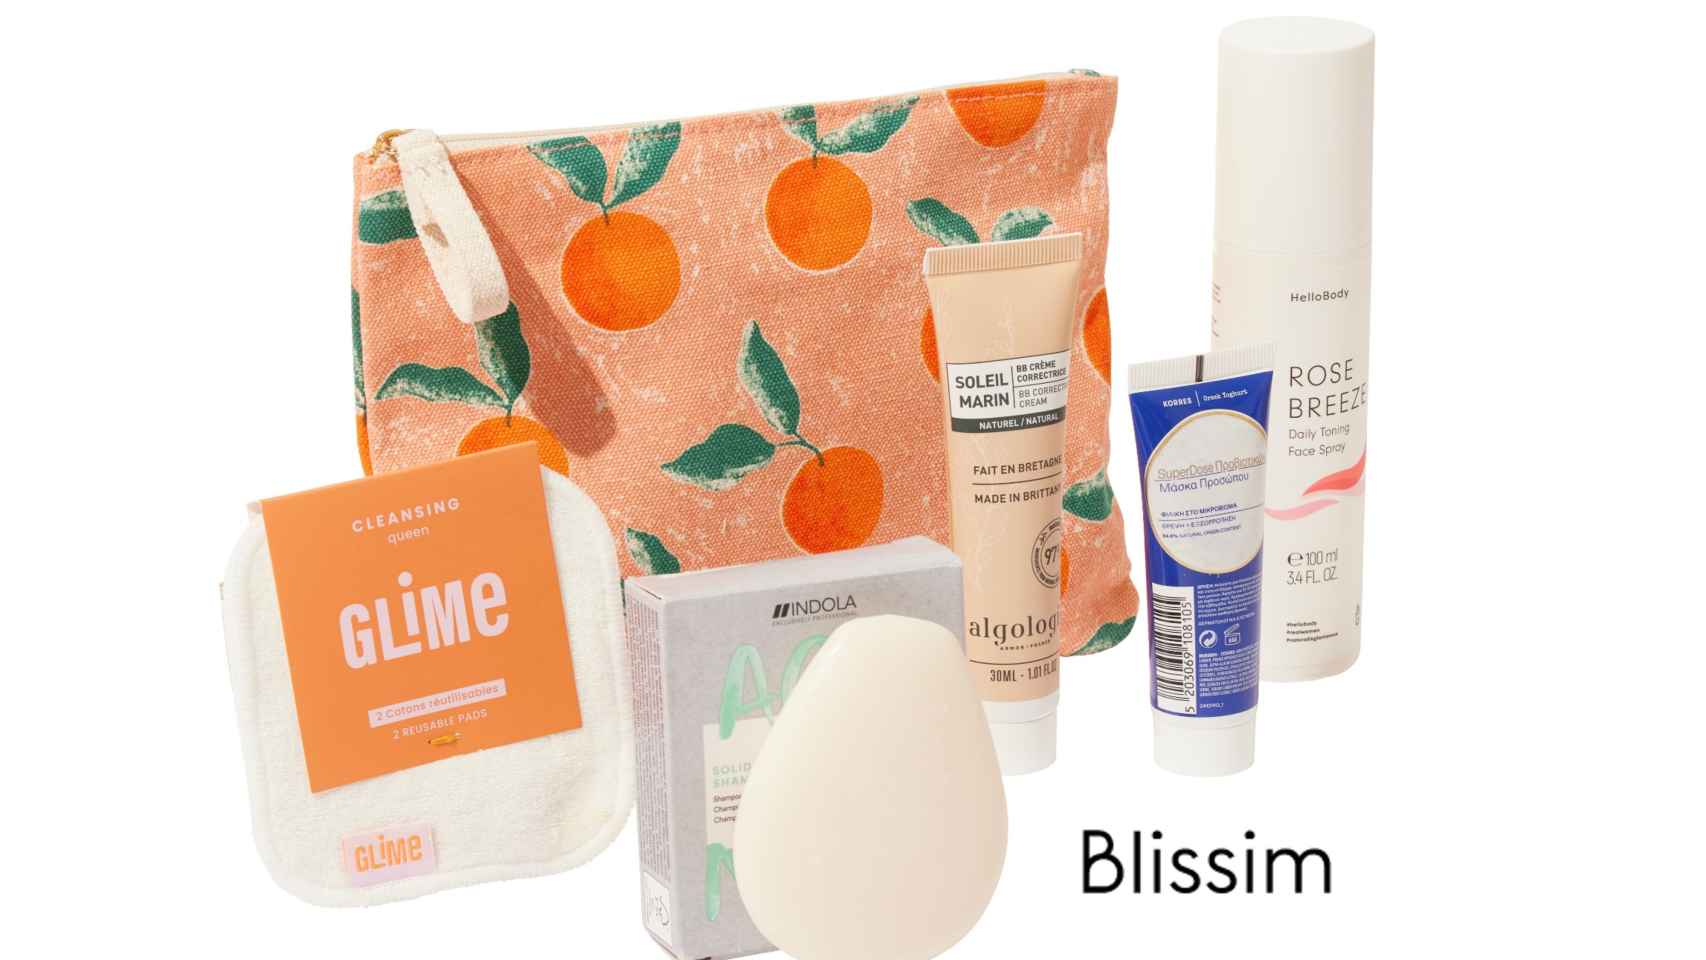 BLISSIM  se une al Club Zona Ñ y lanza sus esenciales de abril en un neceser con temática vitaminada